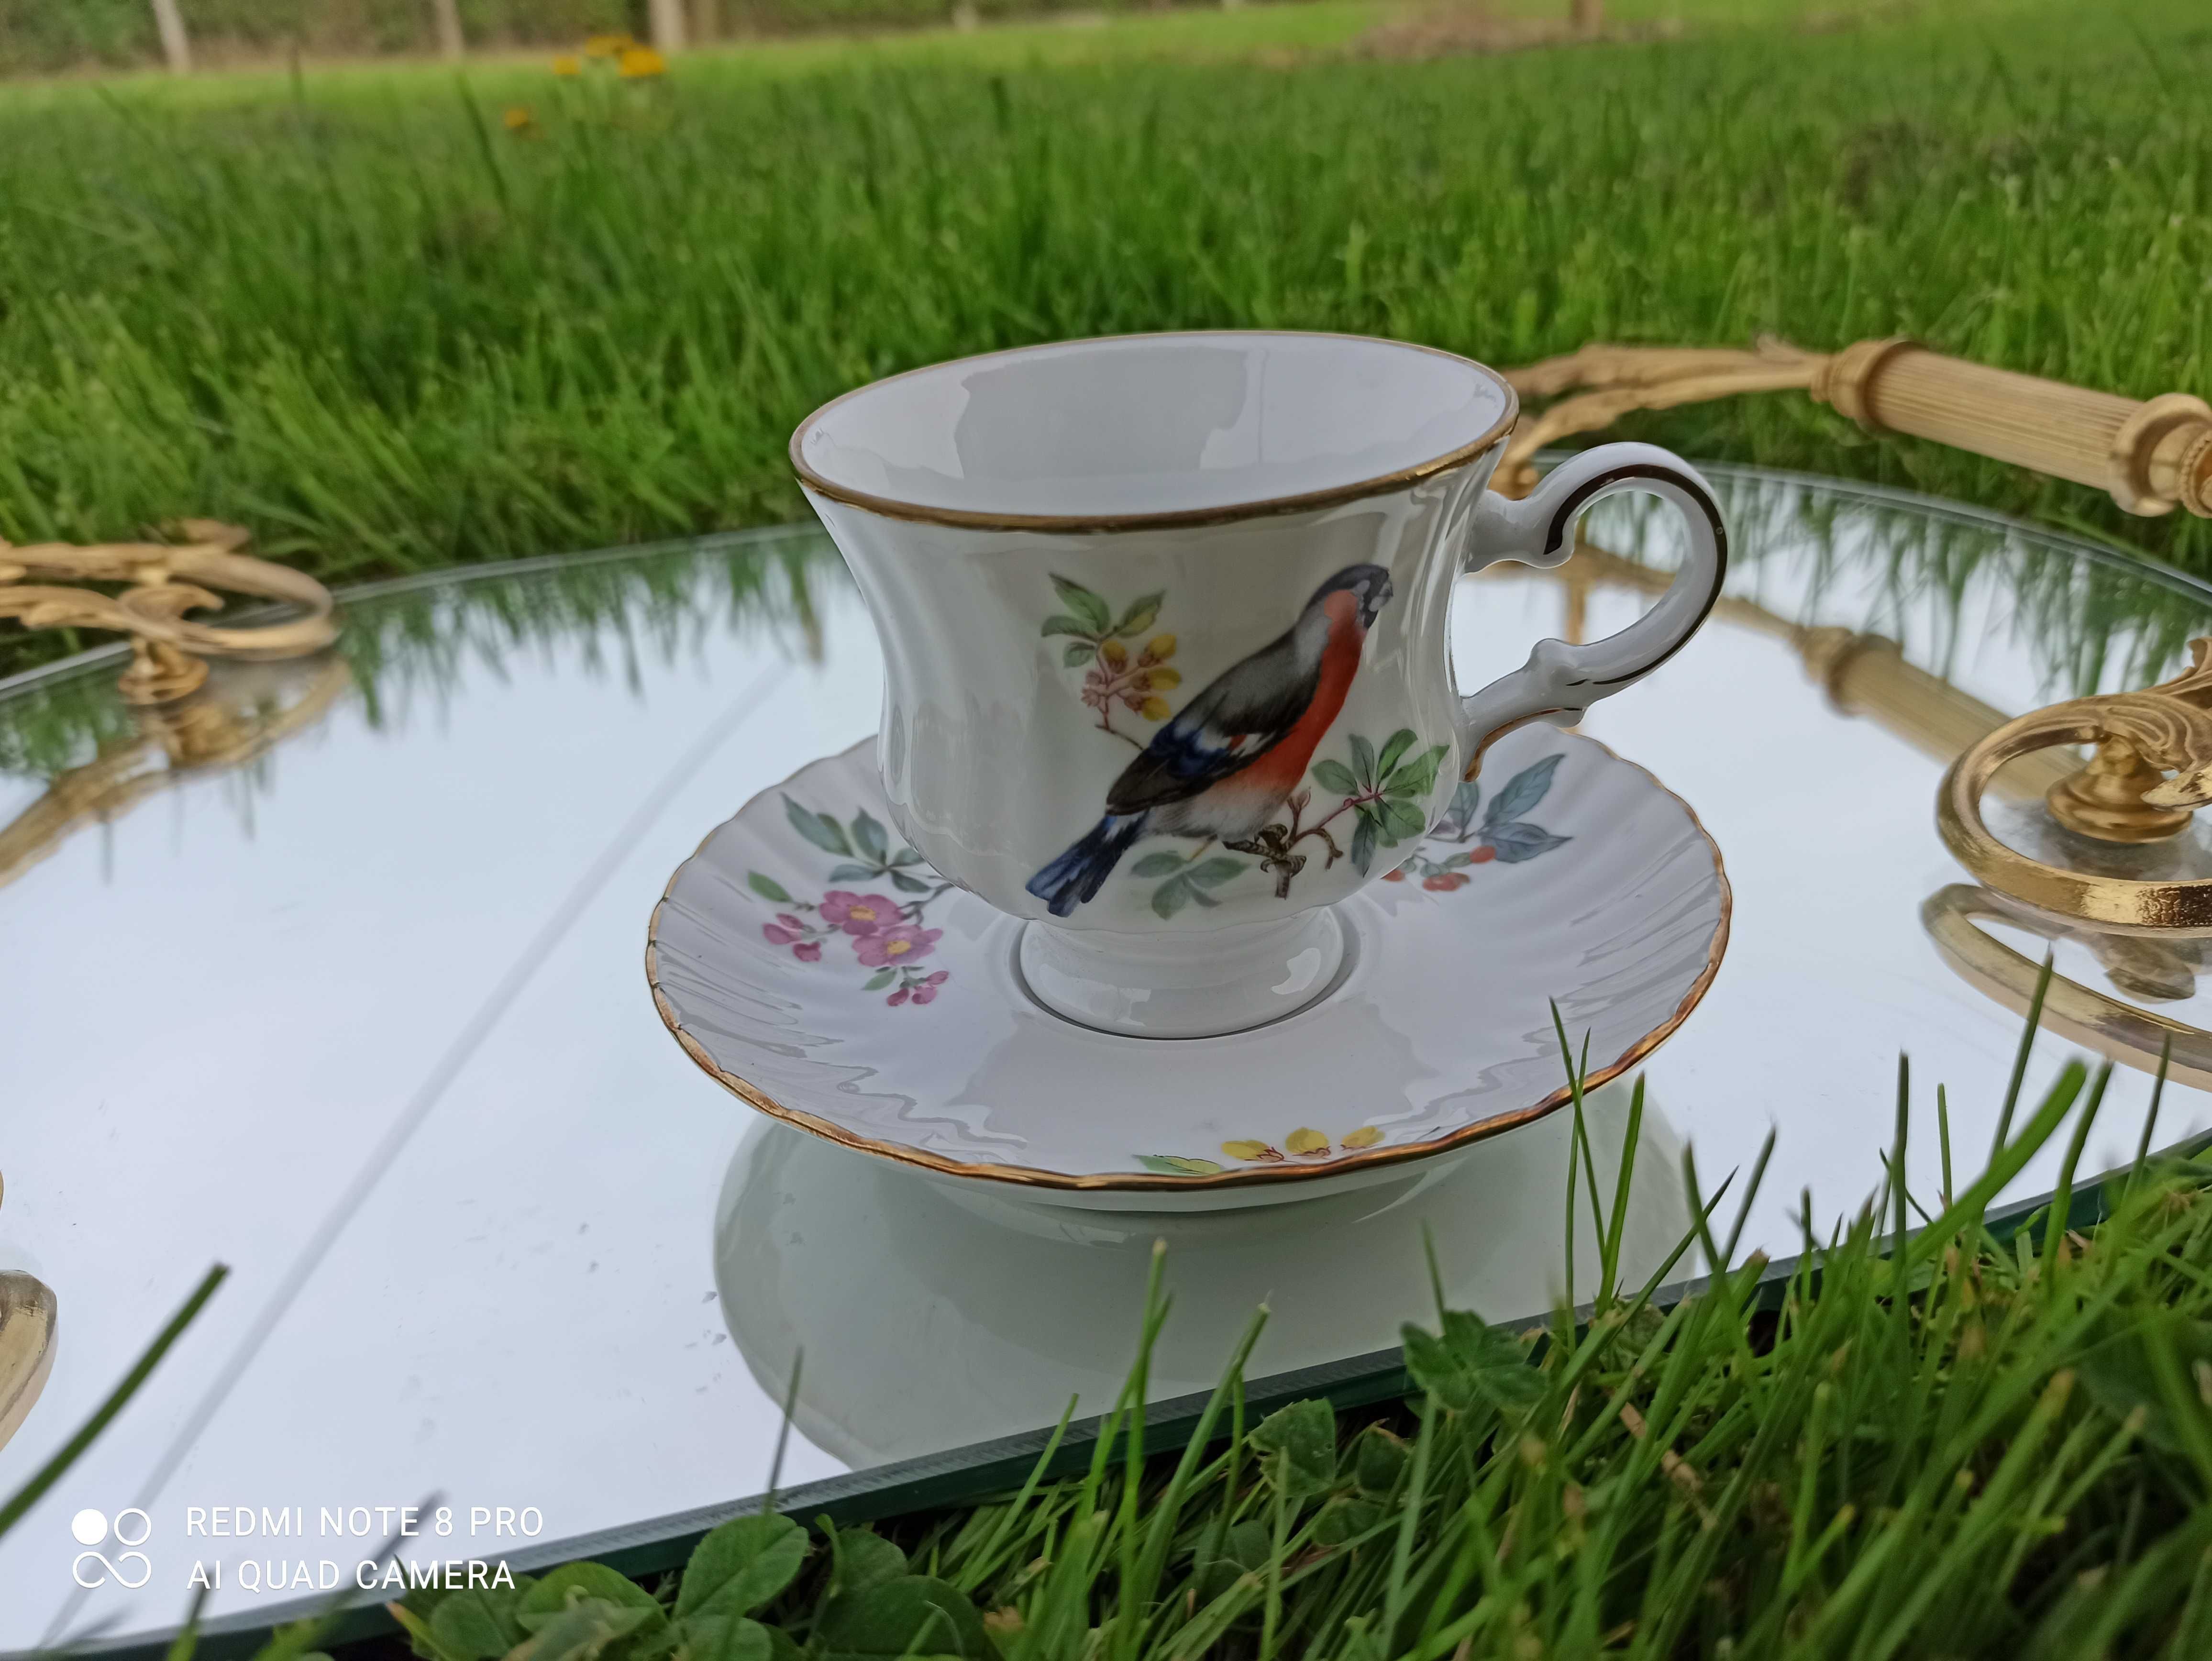 Porcelanowa filiżanka ptak